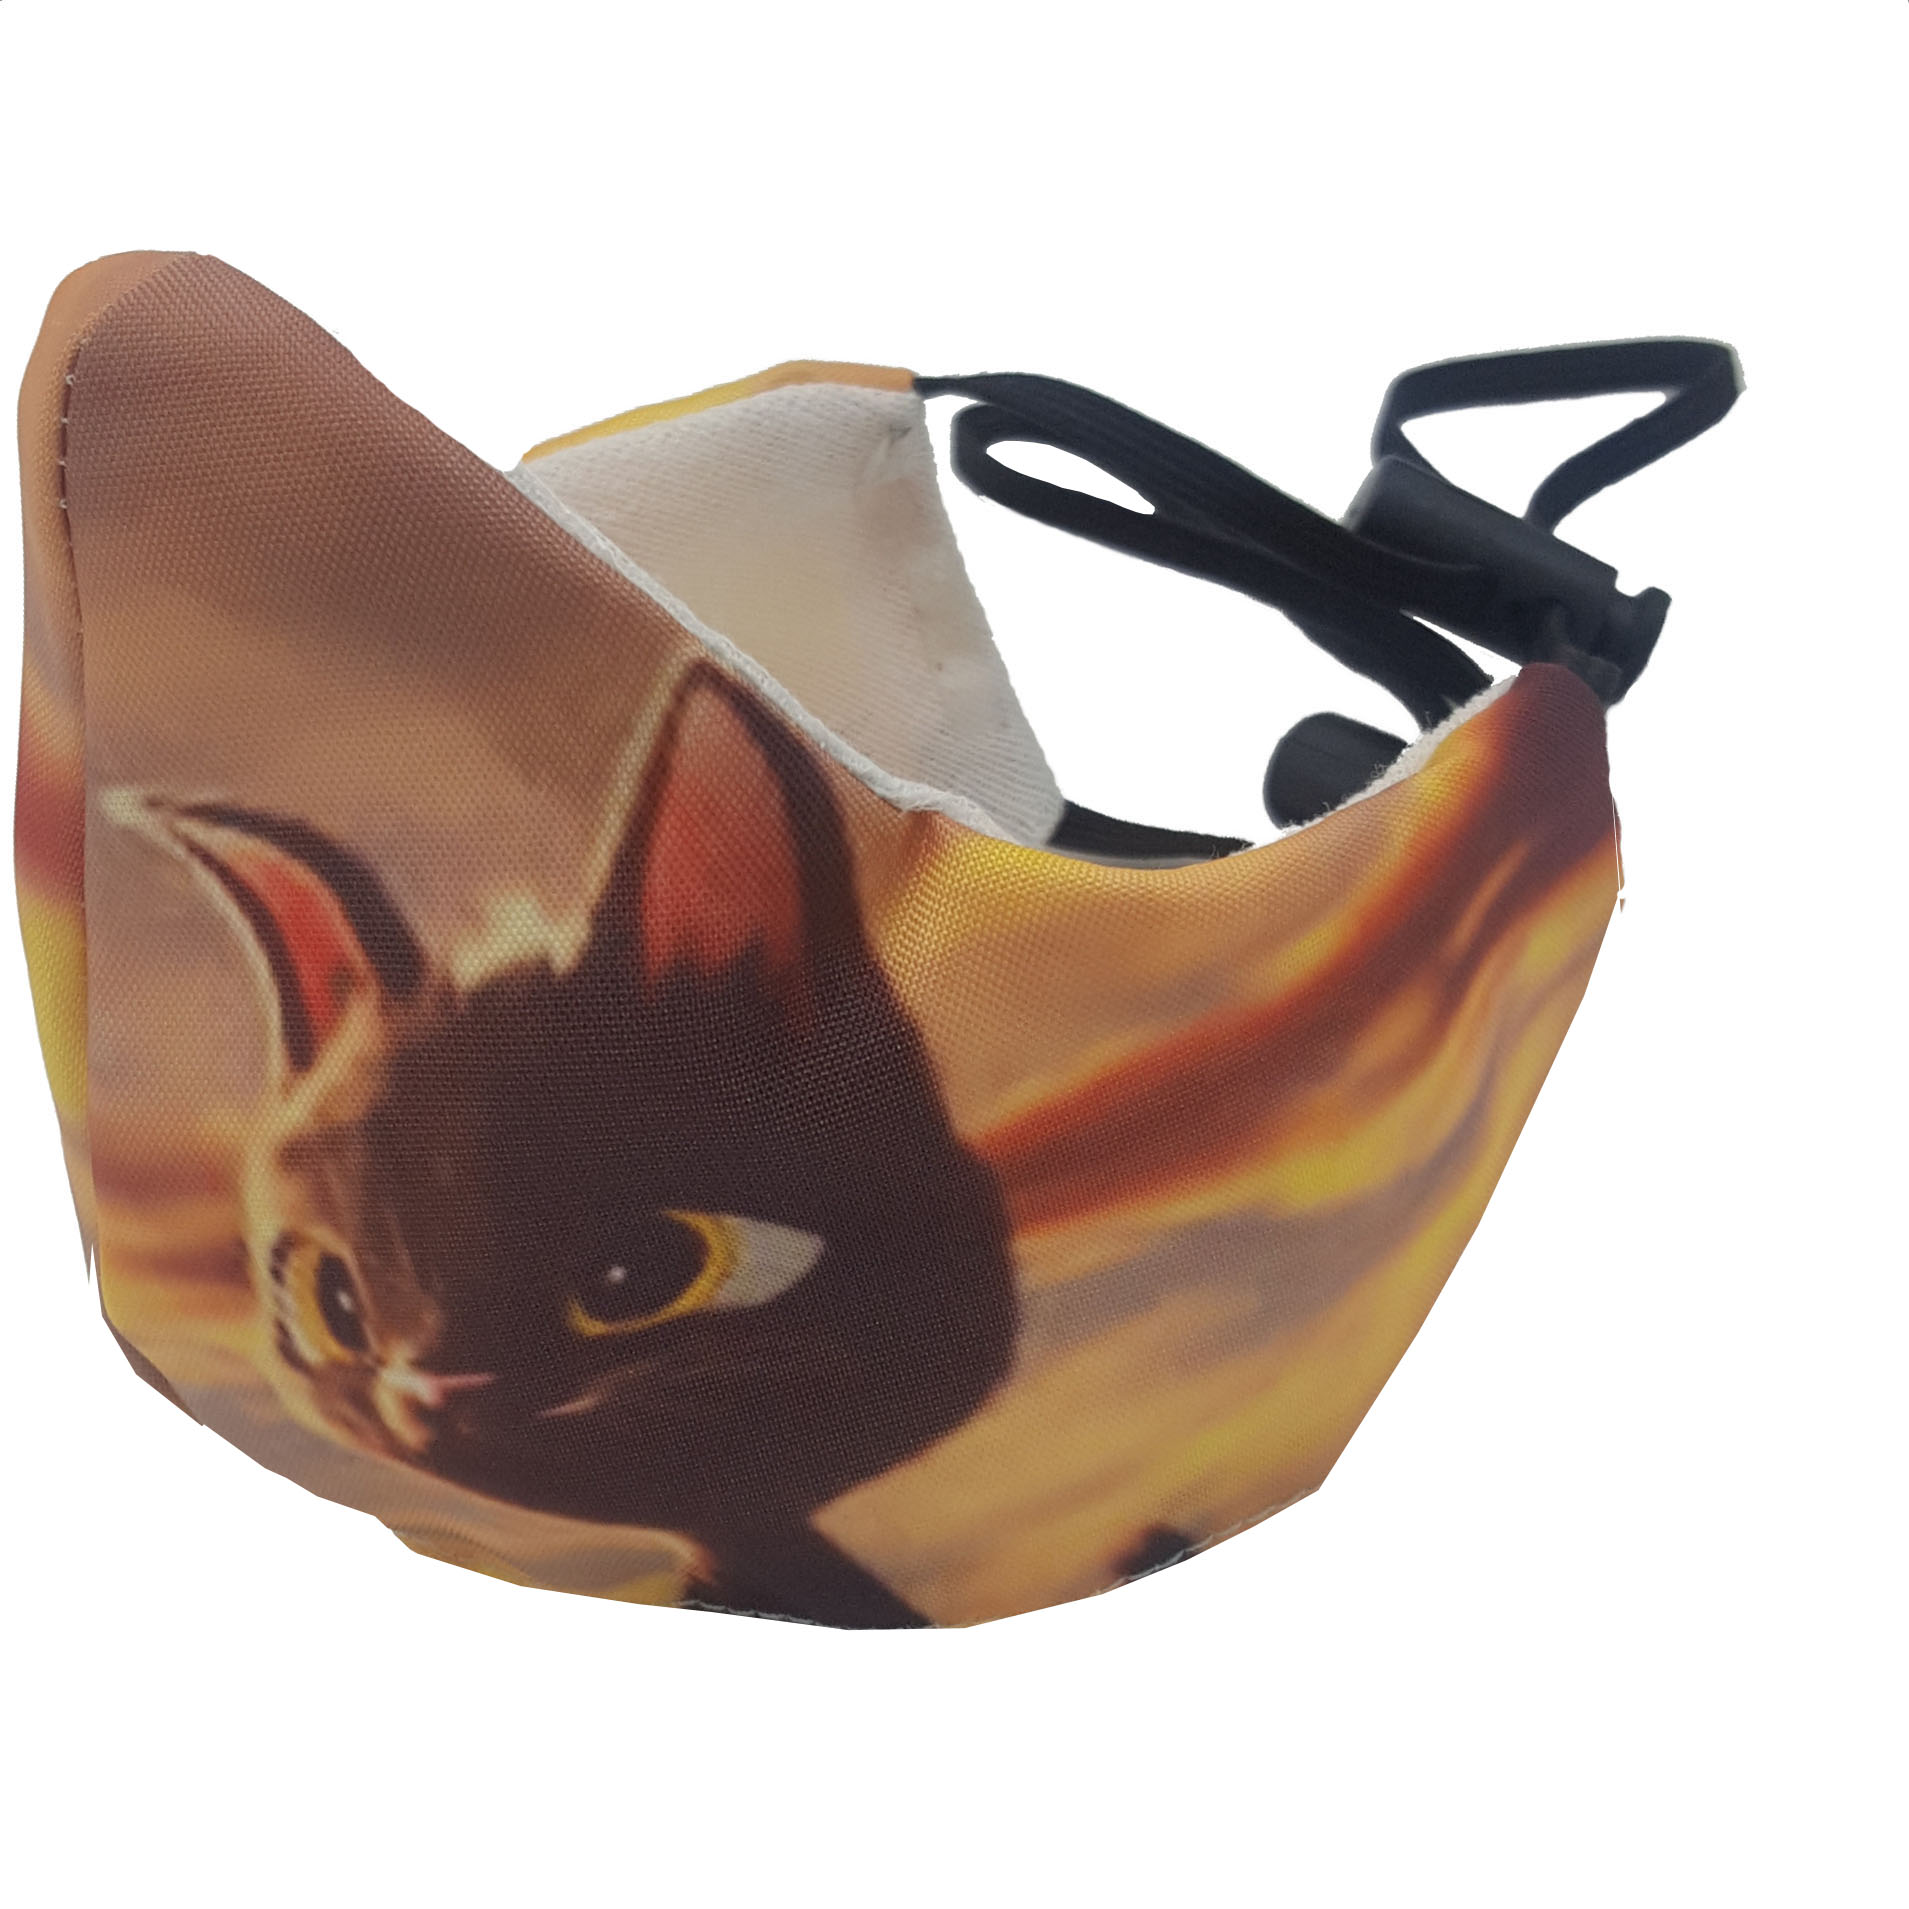 ماسک تزیینی بچگانه کالای ورزشی پروین مدل گربه